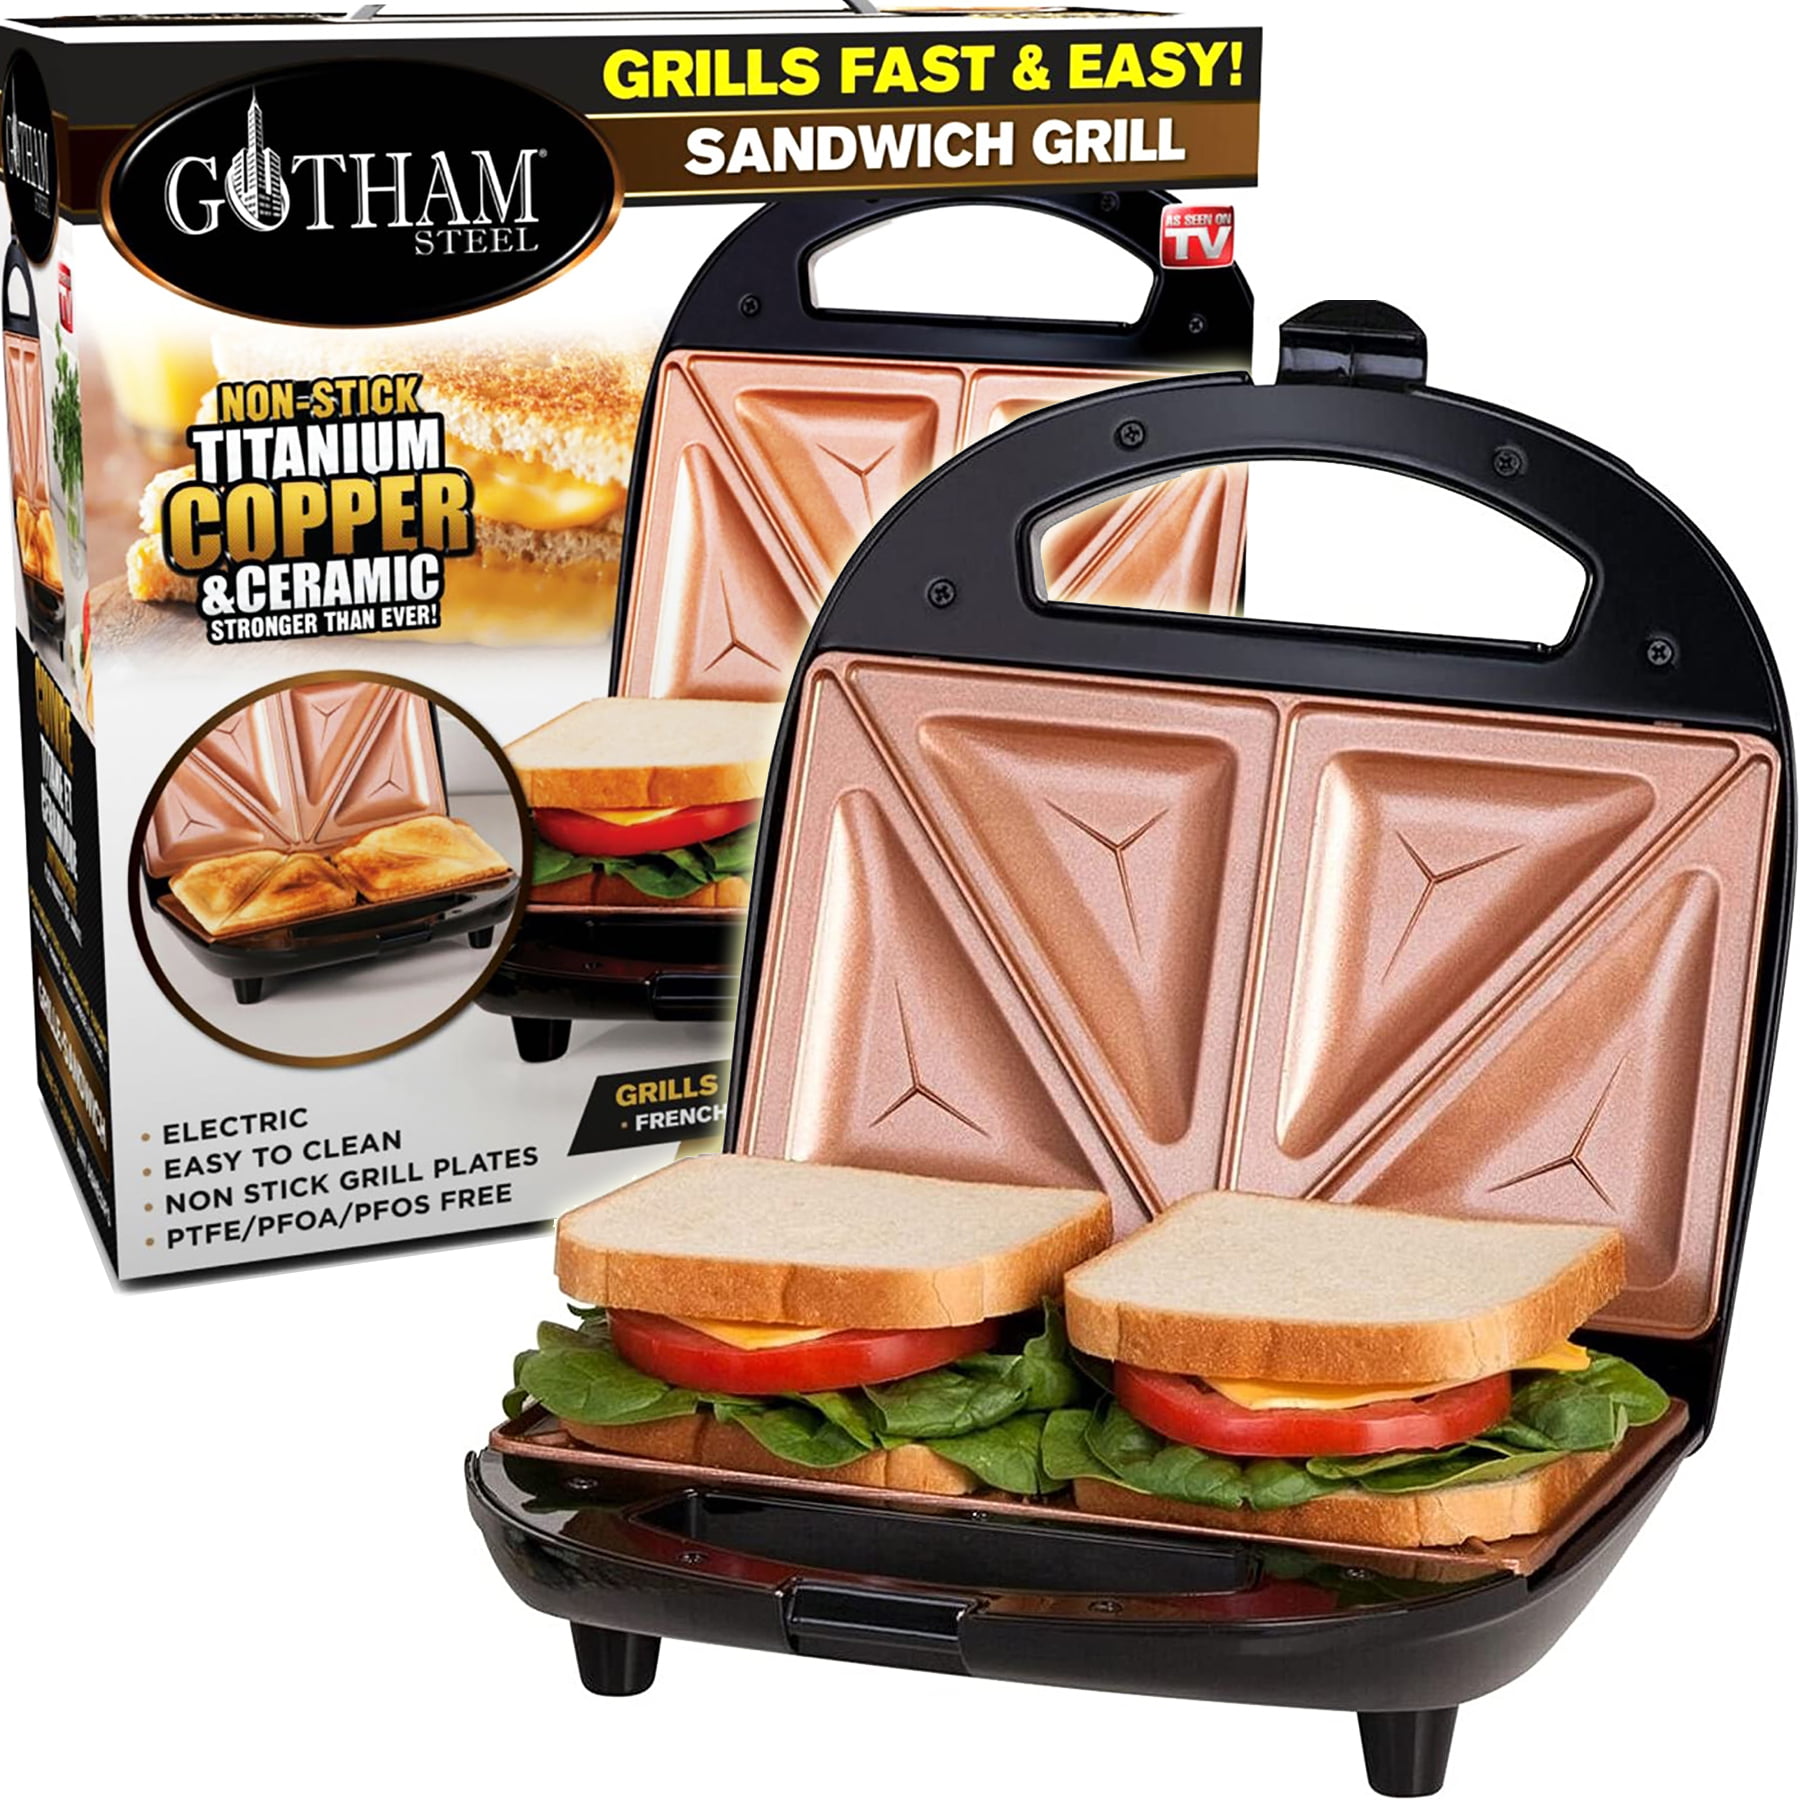 Gotham Steel Sandwich Grill 